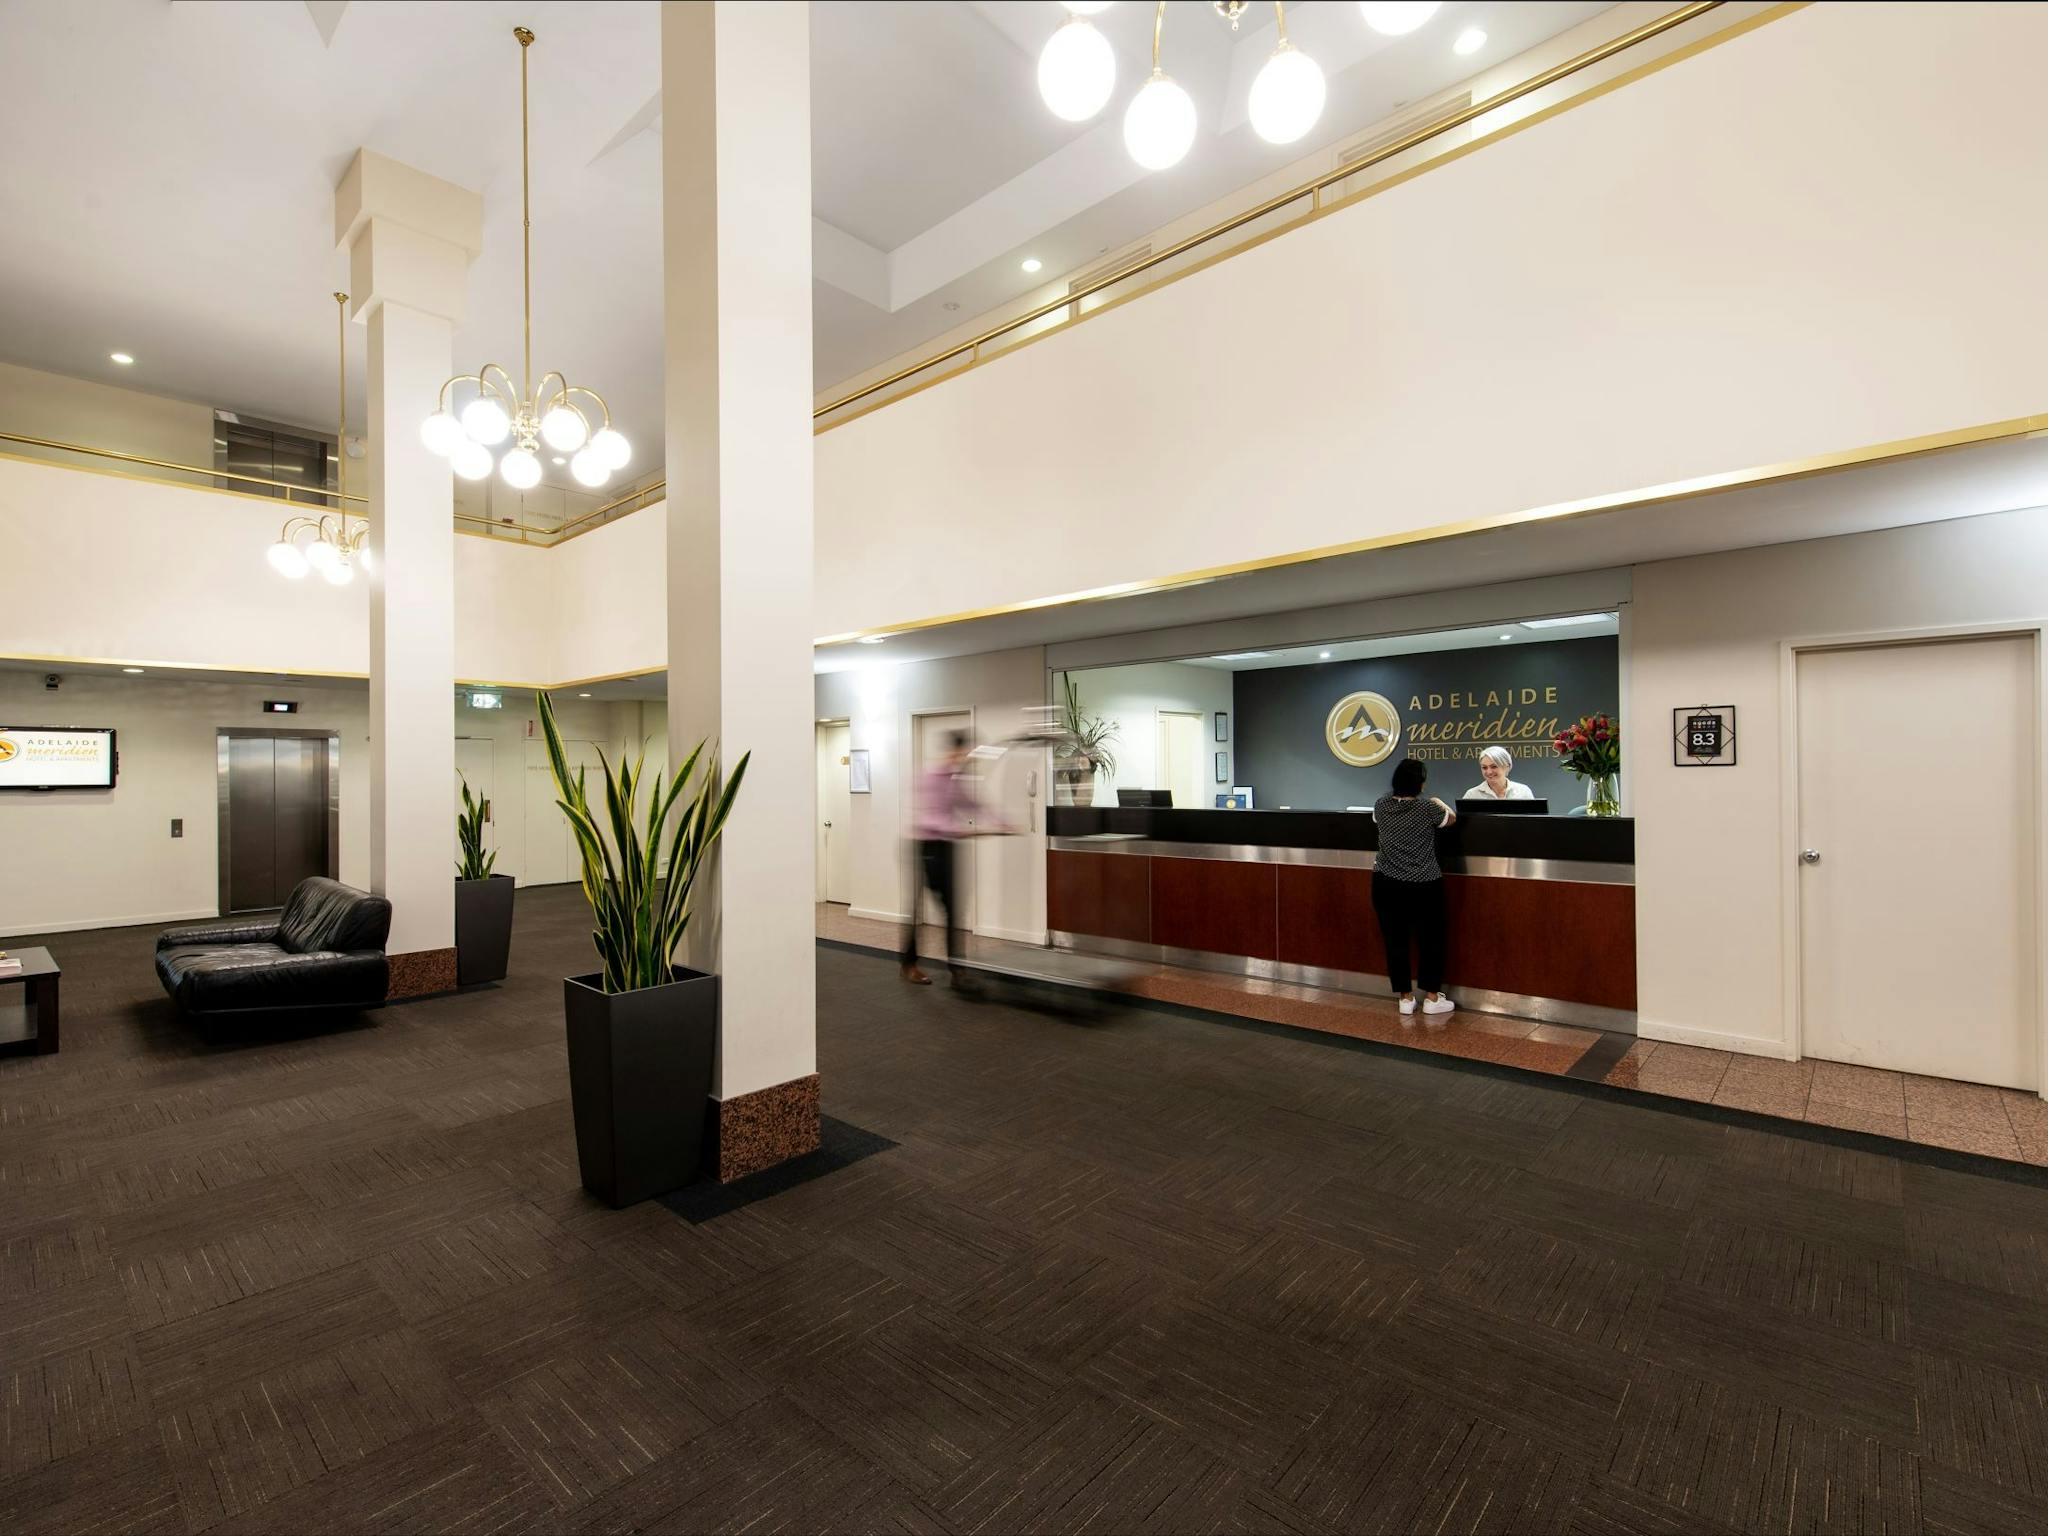 Comfort Hotel Adelaide Meridien Slider Image 4